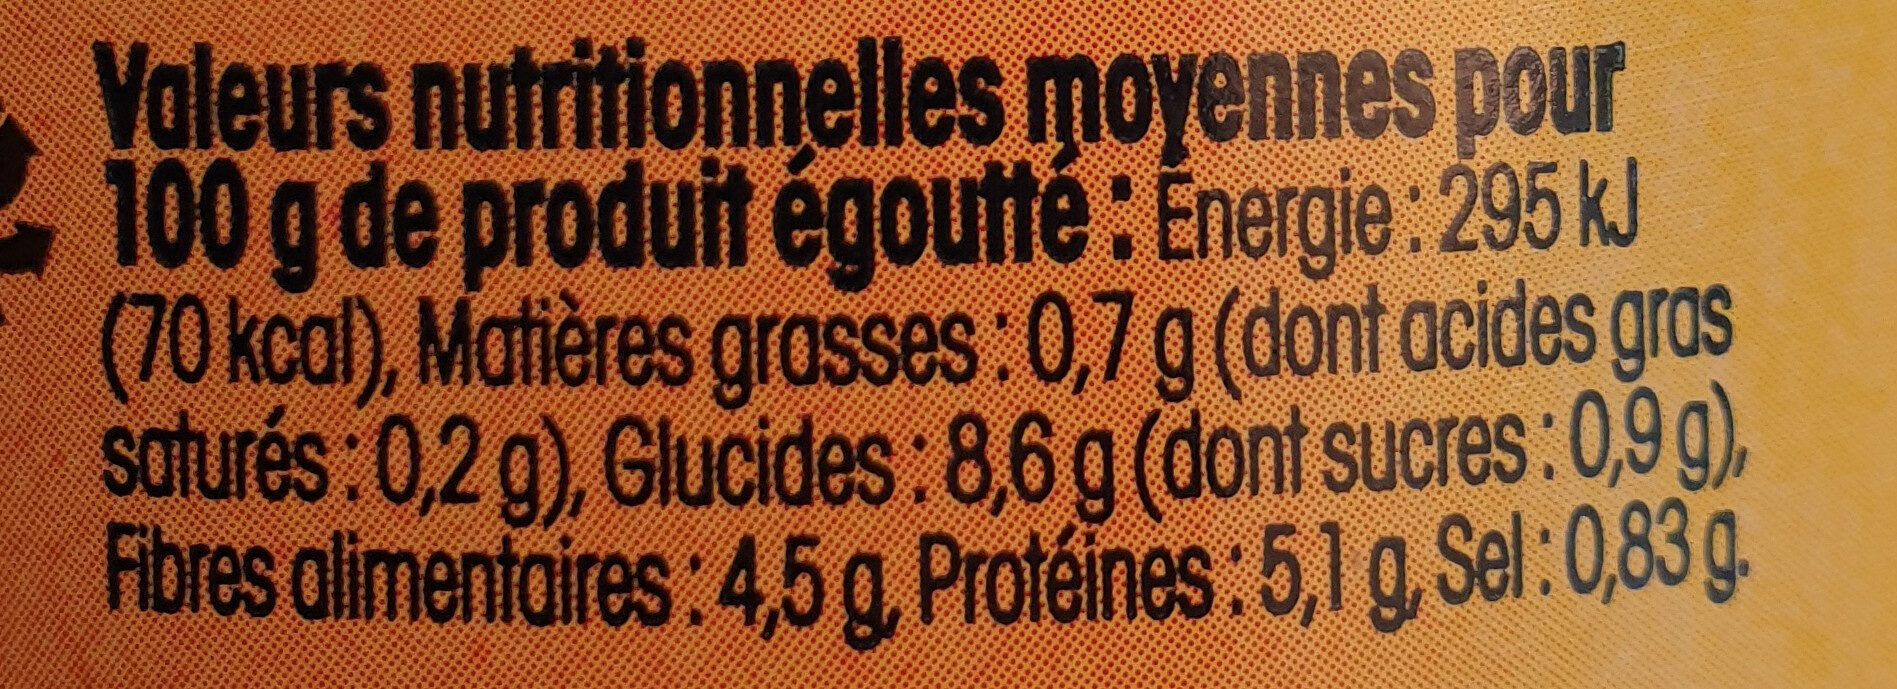 Mogette de Vendée - Tableau nutritionnel - en